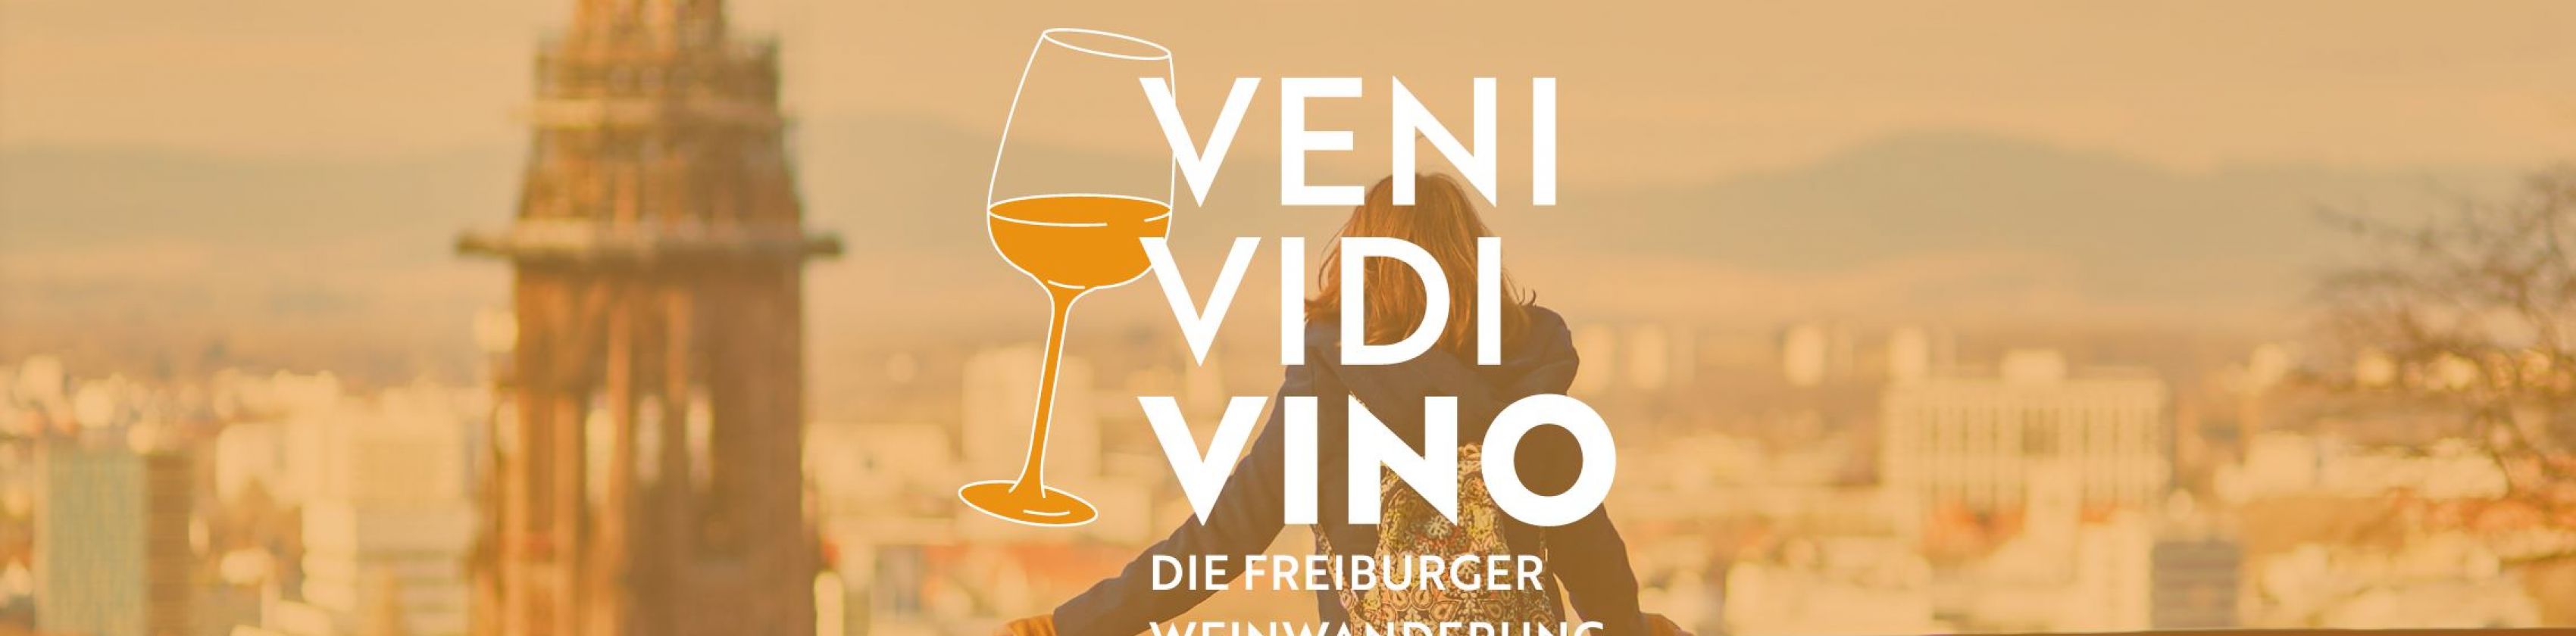 Veni, vidi, vino - l'escursione enologica di Friburgo! - L'escursione enologica sullo Schlossberg di Friburgo con le Guide del Vino